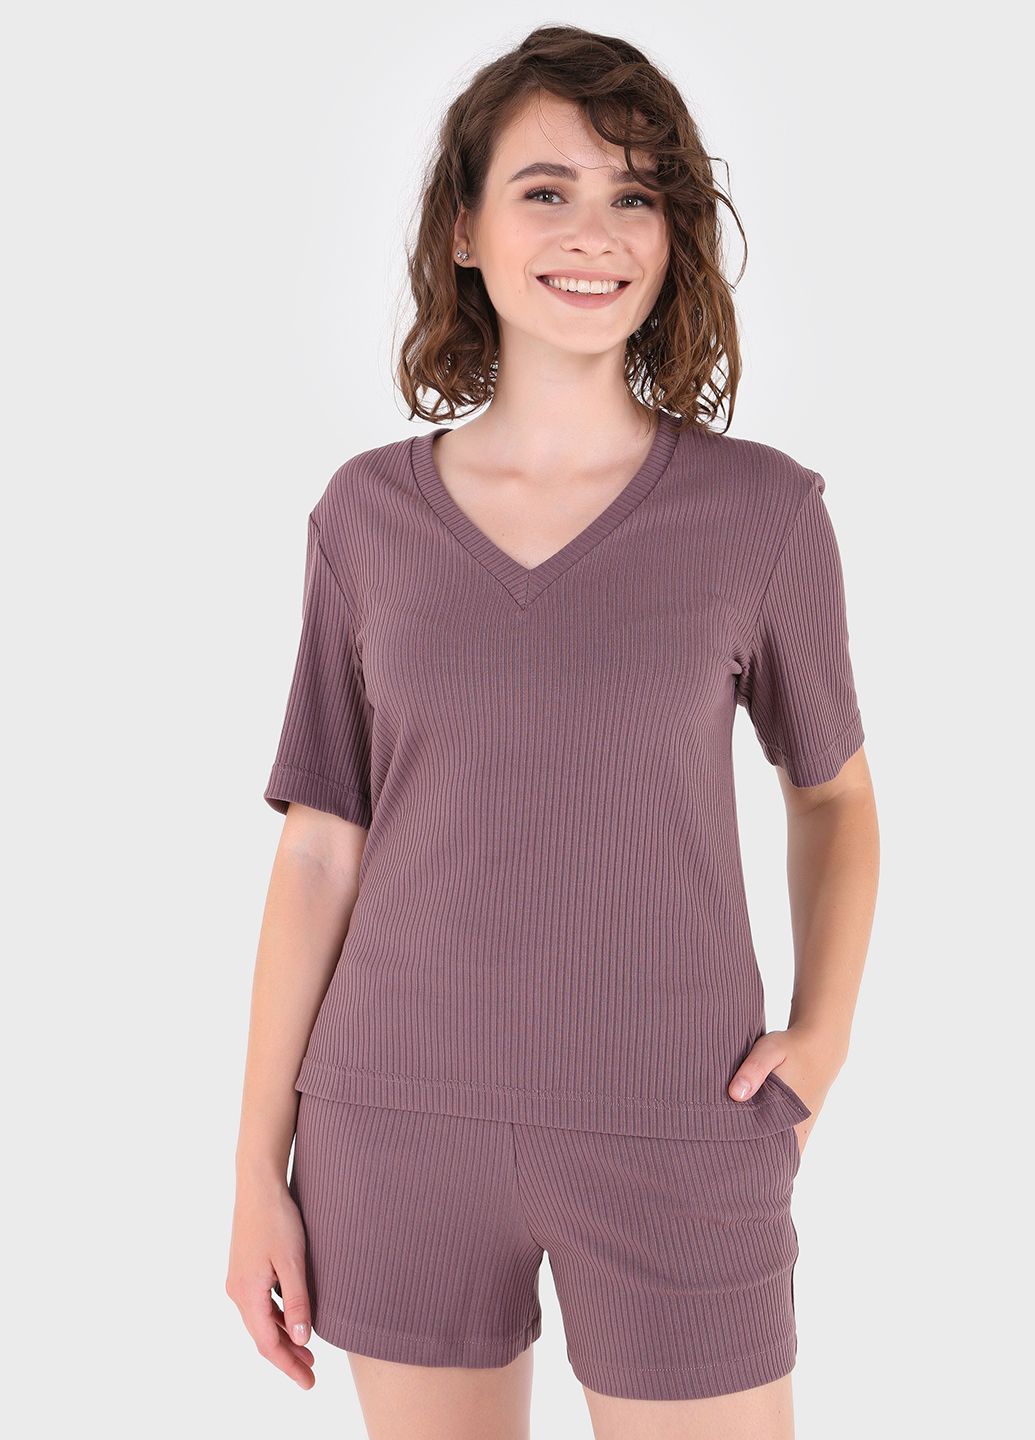 Купить Легкая футболка женская в рубчик Merlini Корунья 800000024 - Темно-пудровый, 42-44 в интернет-магазине